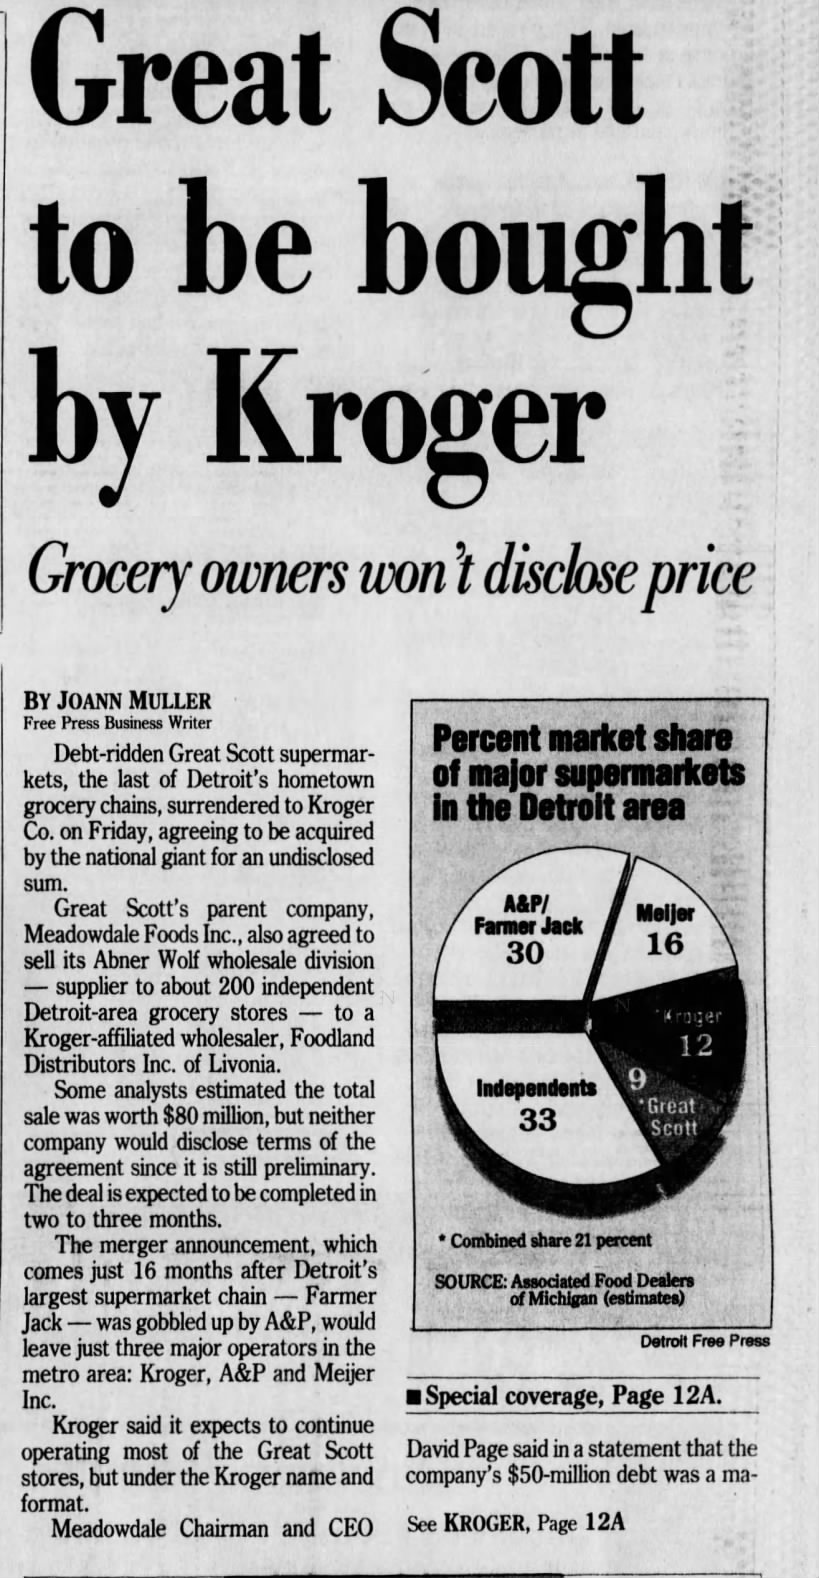 Kroger buys Great Scott '90